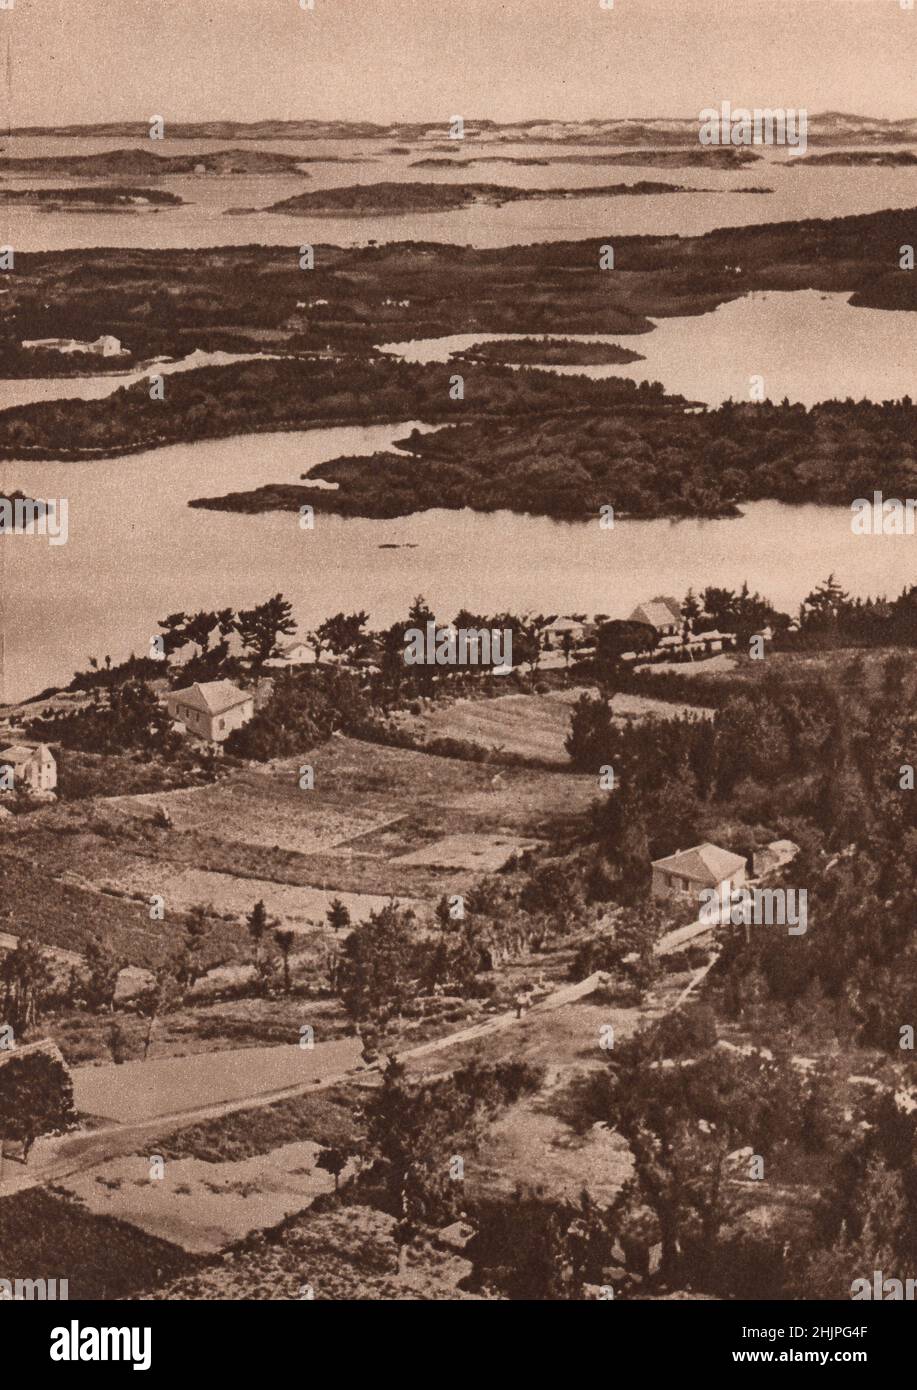 Das ewige Grün kleidet die Grate und Atolle, die durch gewundene Wasserstraßen getrennt sind und einen blick von unvergleichlicher Schönheit bieten (1923) Stockfoto